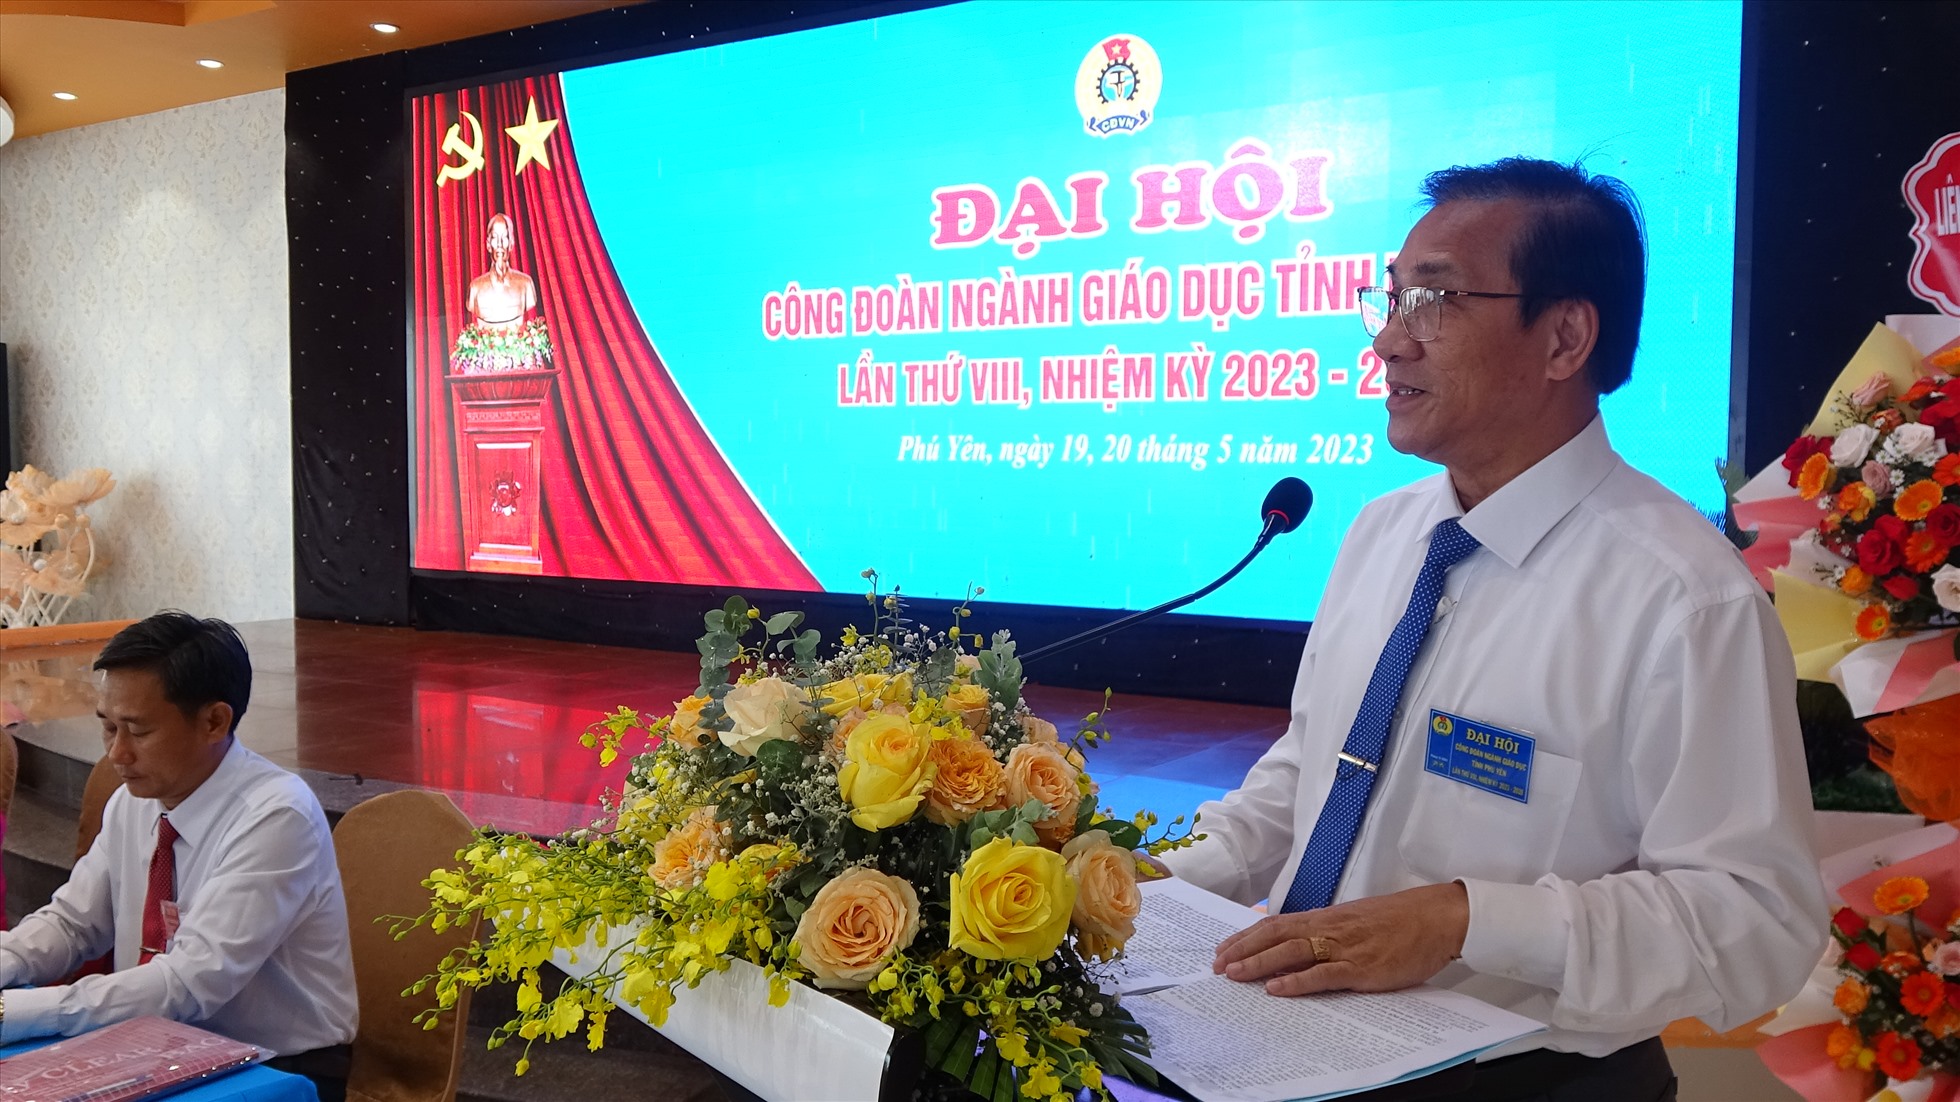 Đại hội VIII Công đoàn Ngành Giáo dục Phú Yên đã kiểm điểm, đánh giá việc thực hiện Nghị quyết Đại hội VII, nhiệm kỳ 2018-2023. Ảnh: Mạnh Tuấn